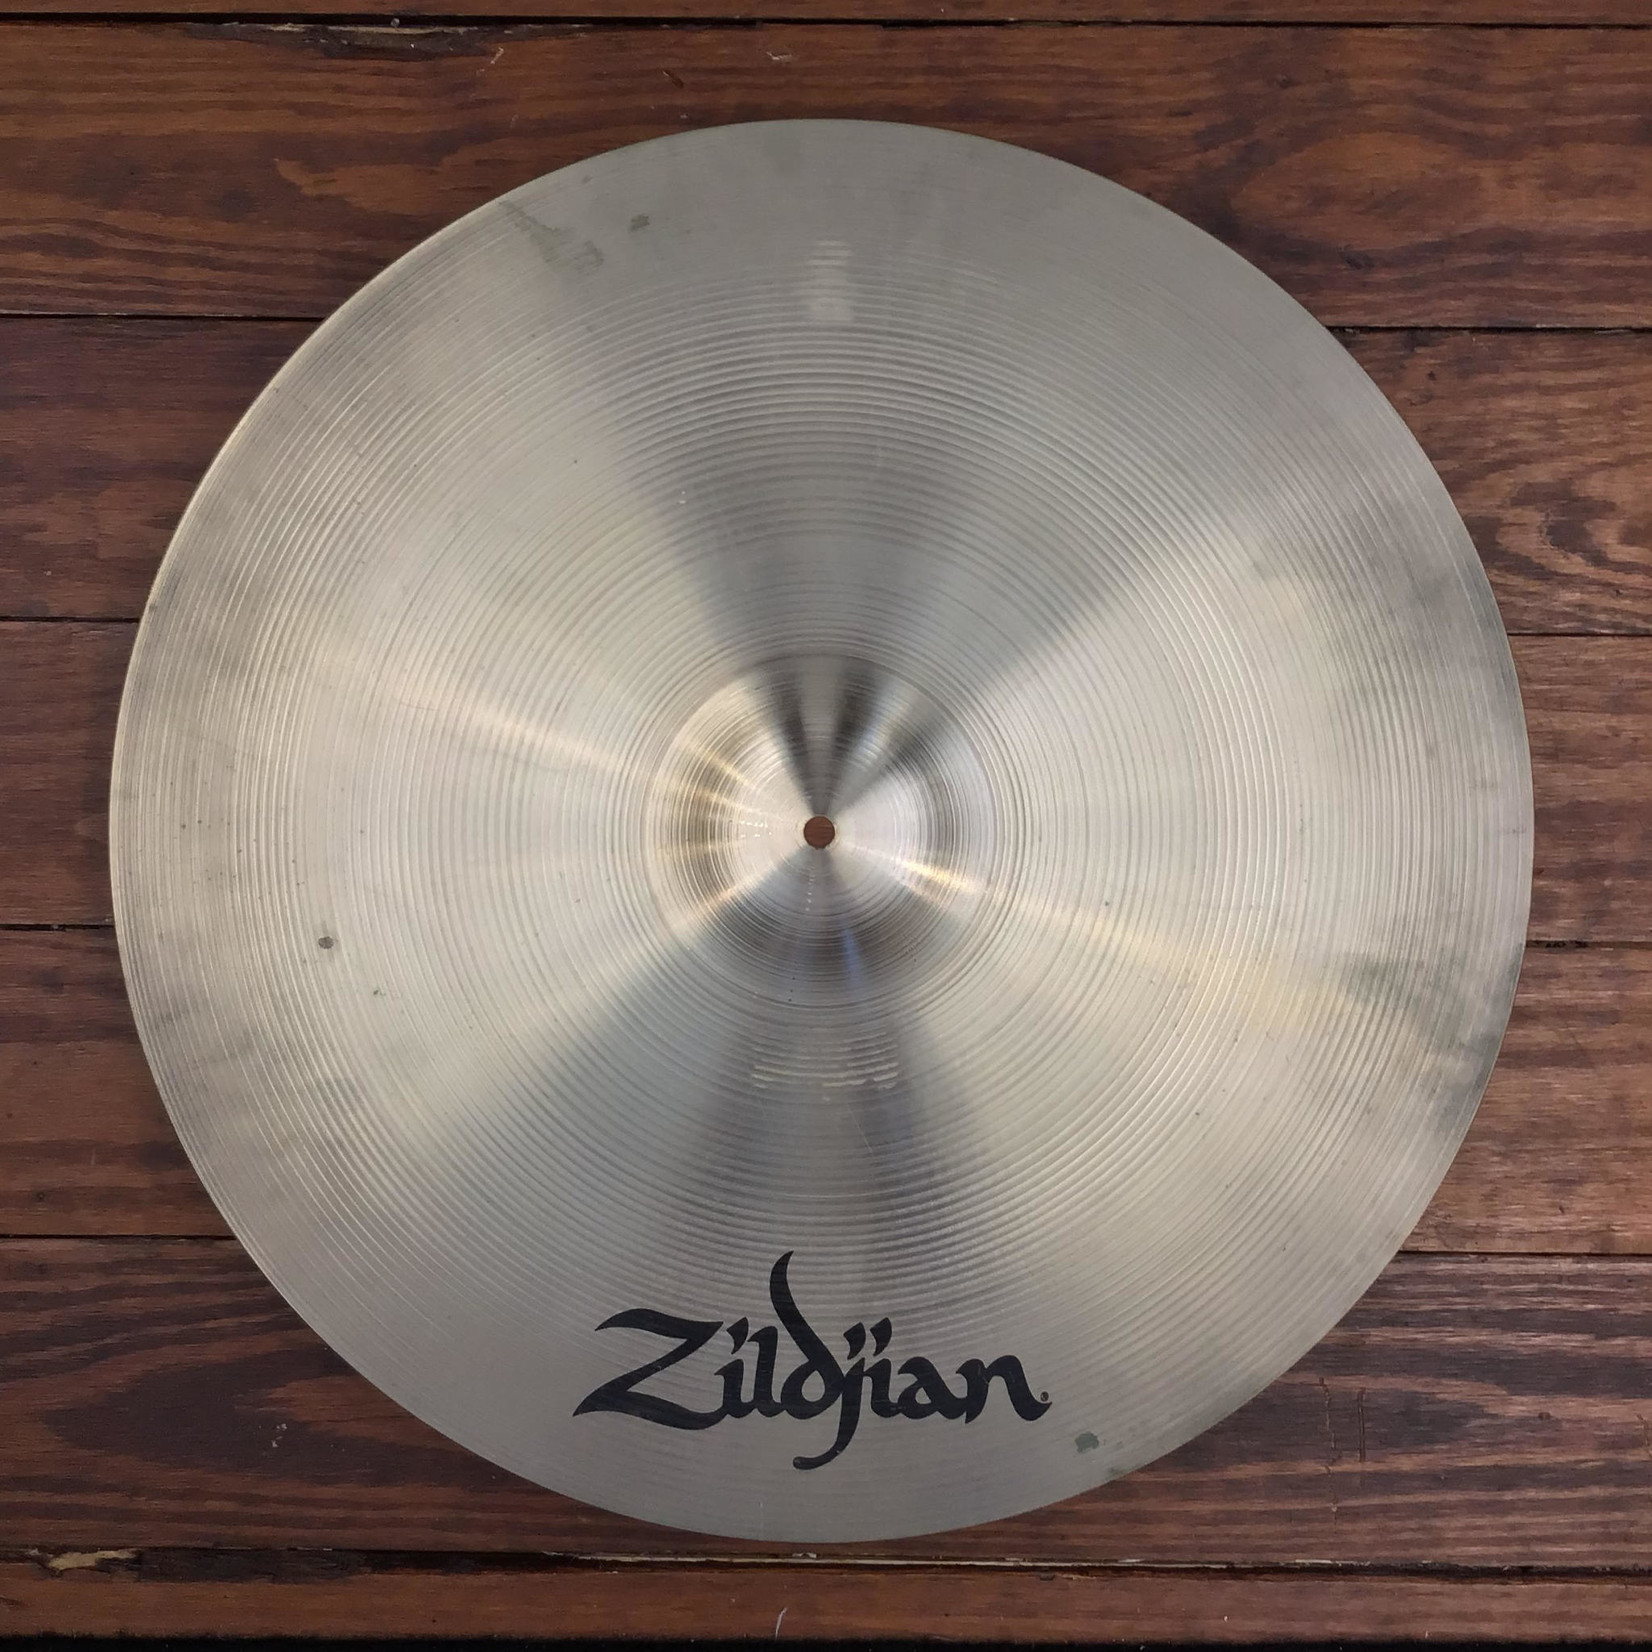 Zildjian USED Zildjian A 22" Medium Ride Cymbal